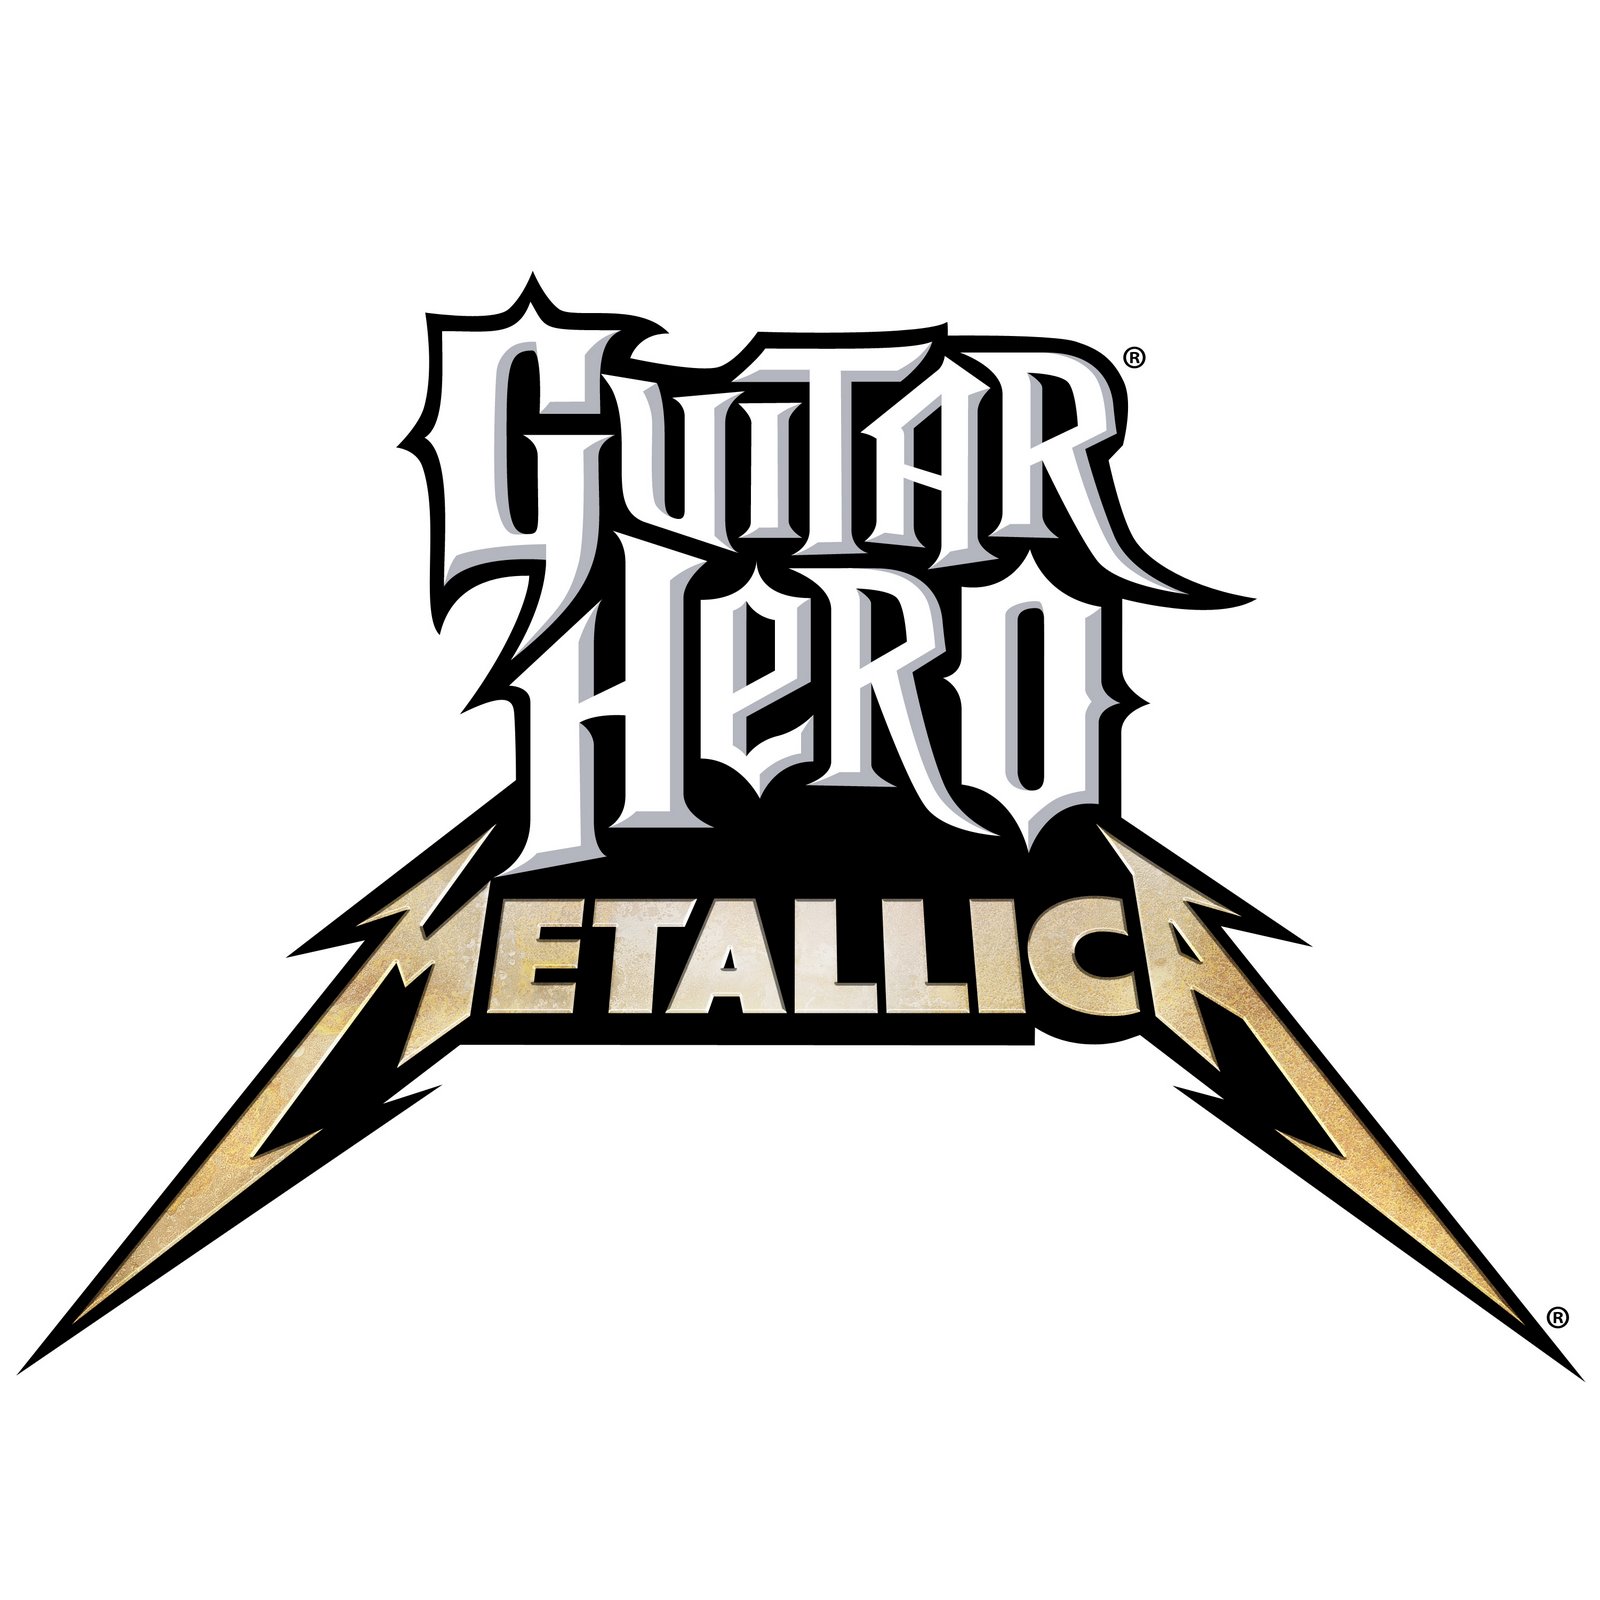 [guitar_hero_metallica_logo_-_hires.jpg]